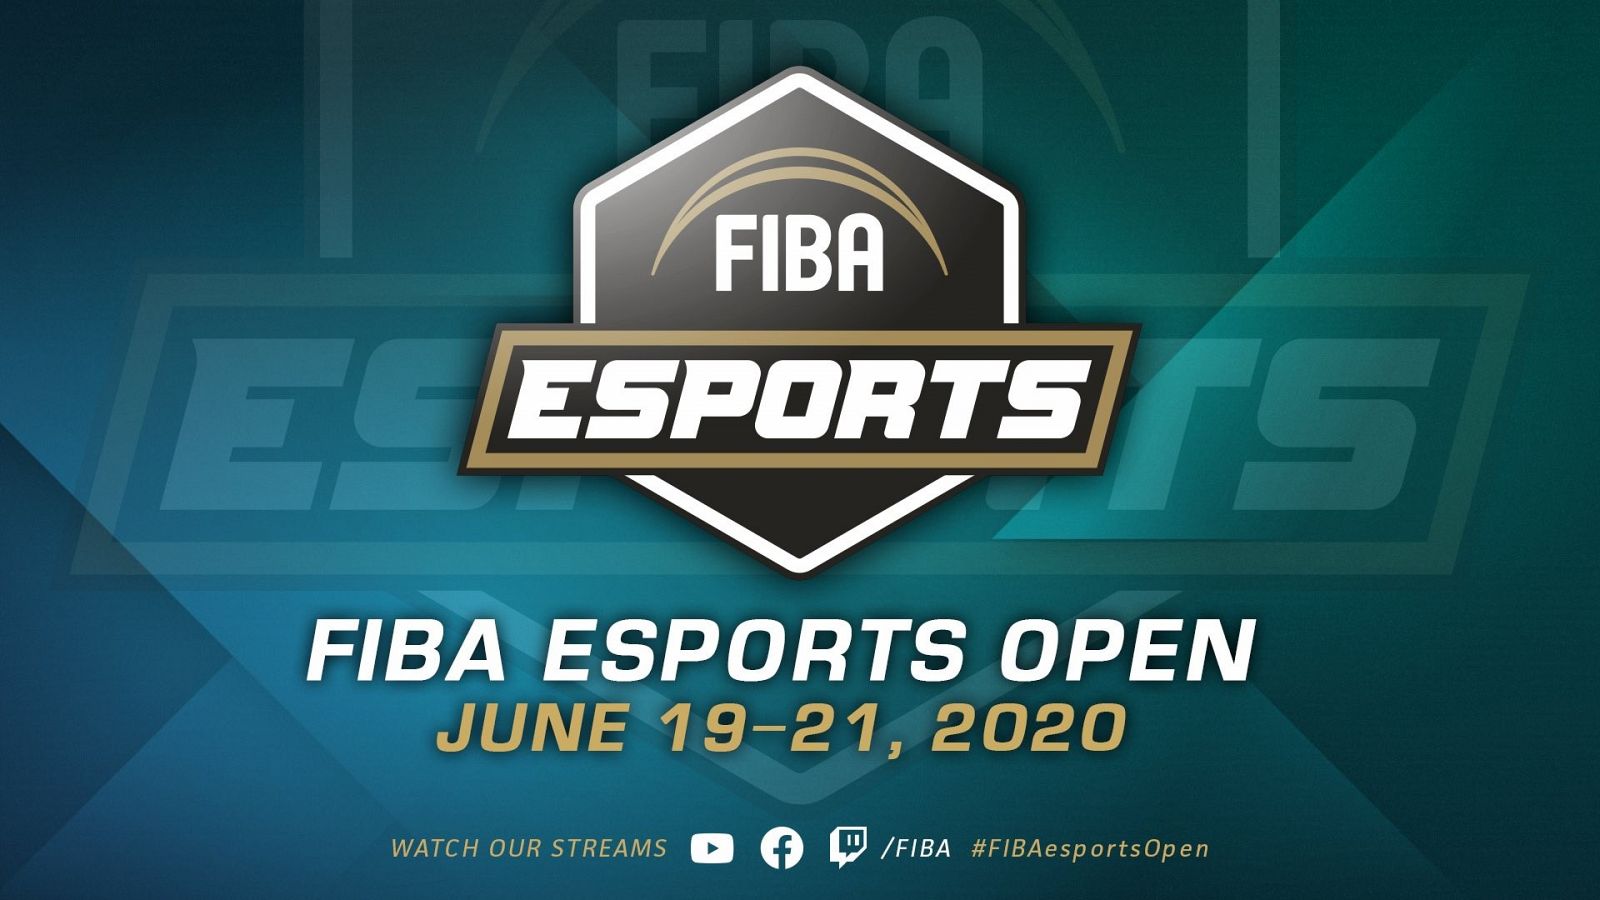 Imagen promocional del primer torneo internacional de eSports organizado por la FIBA